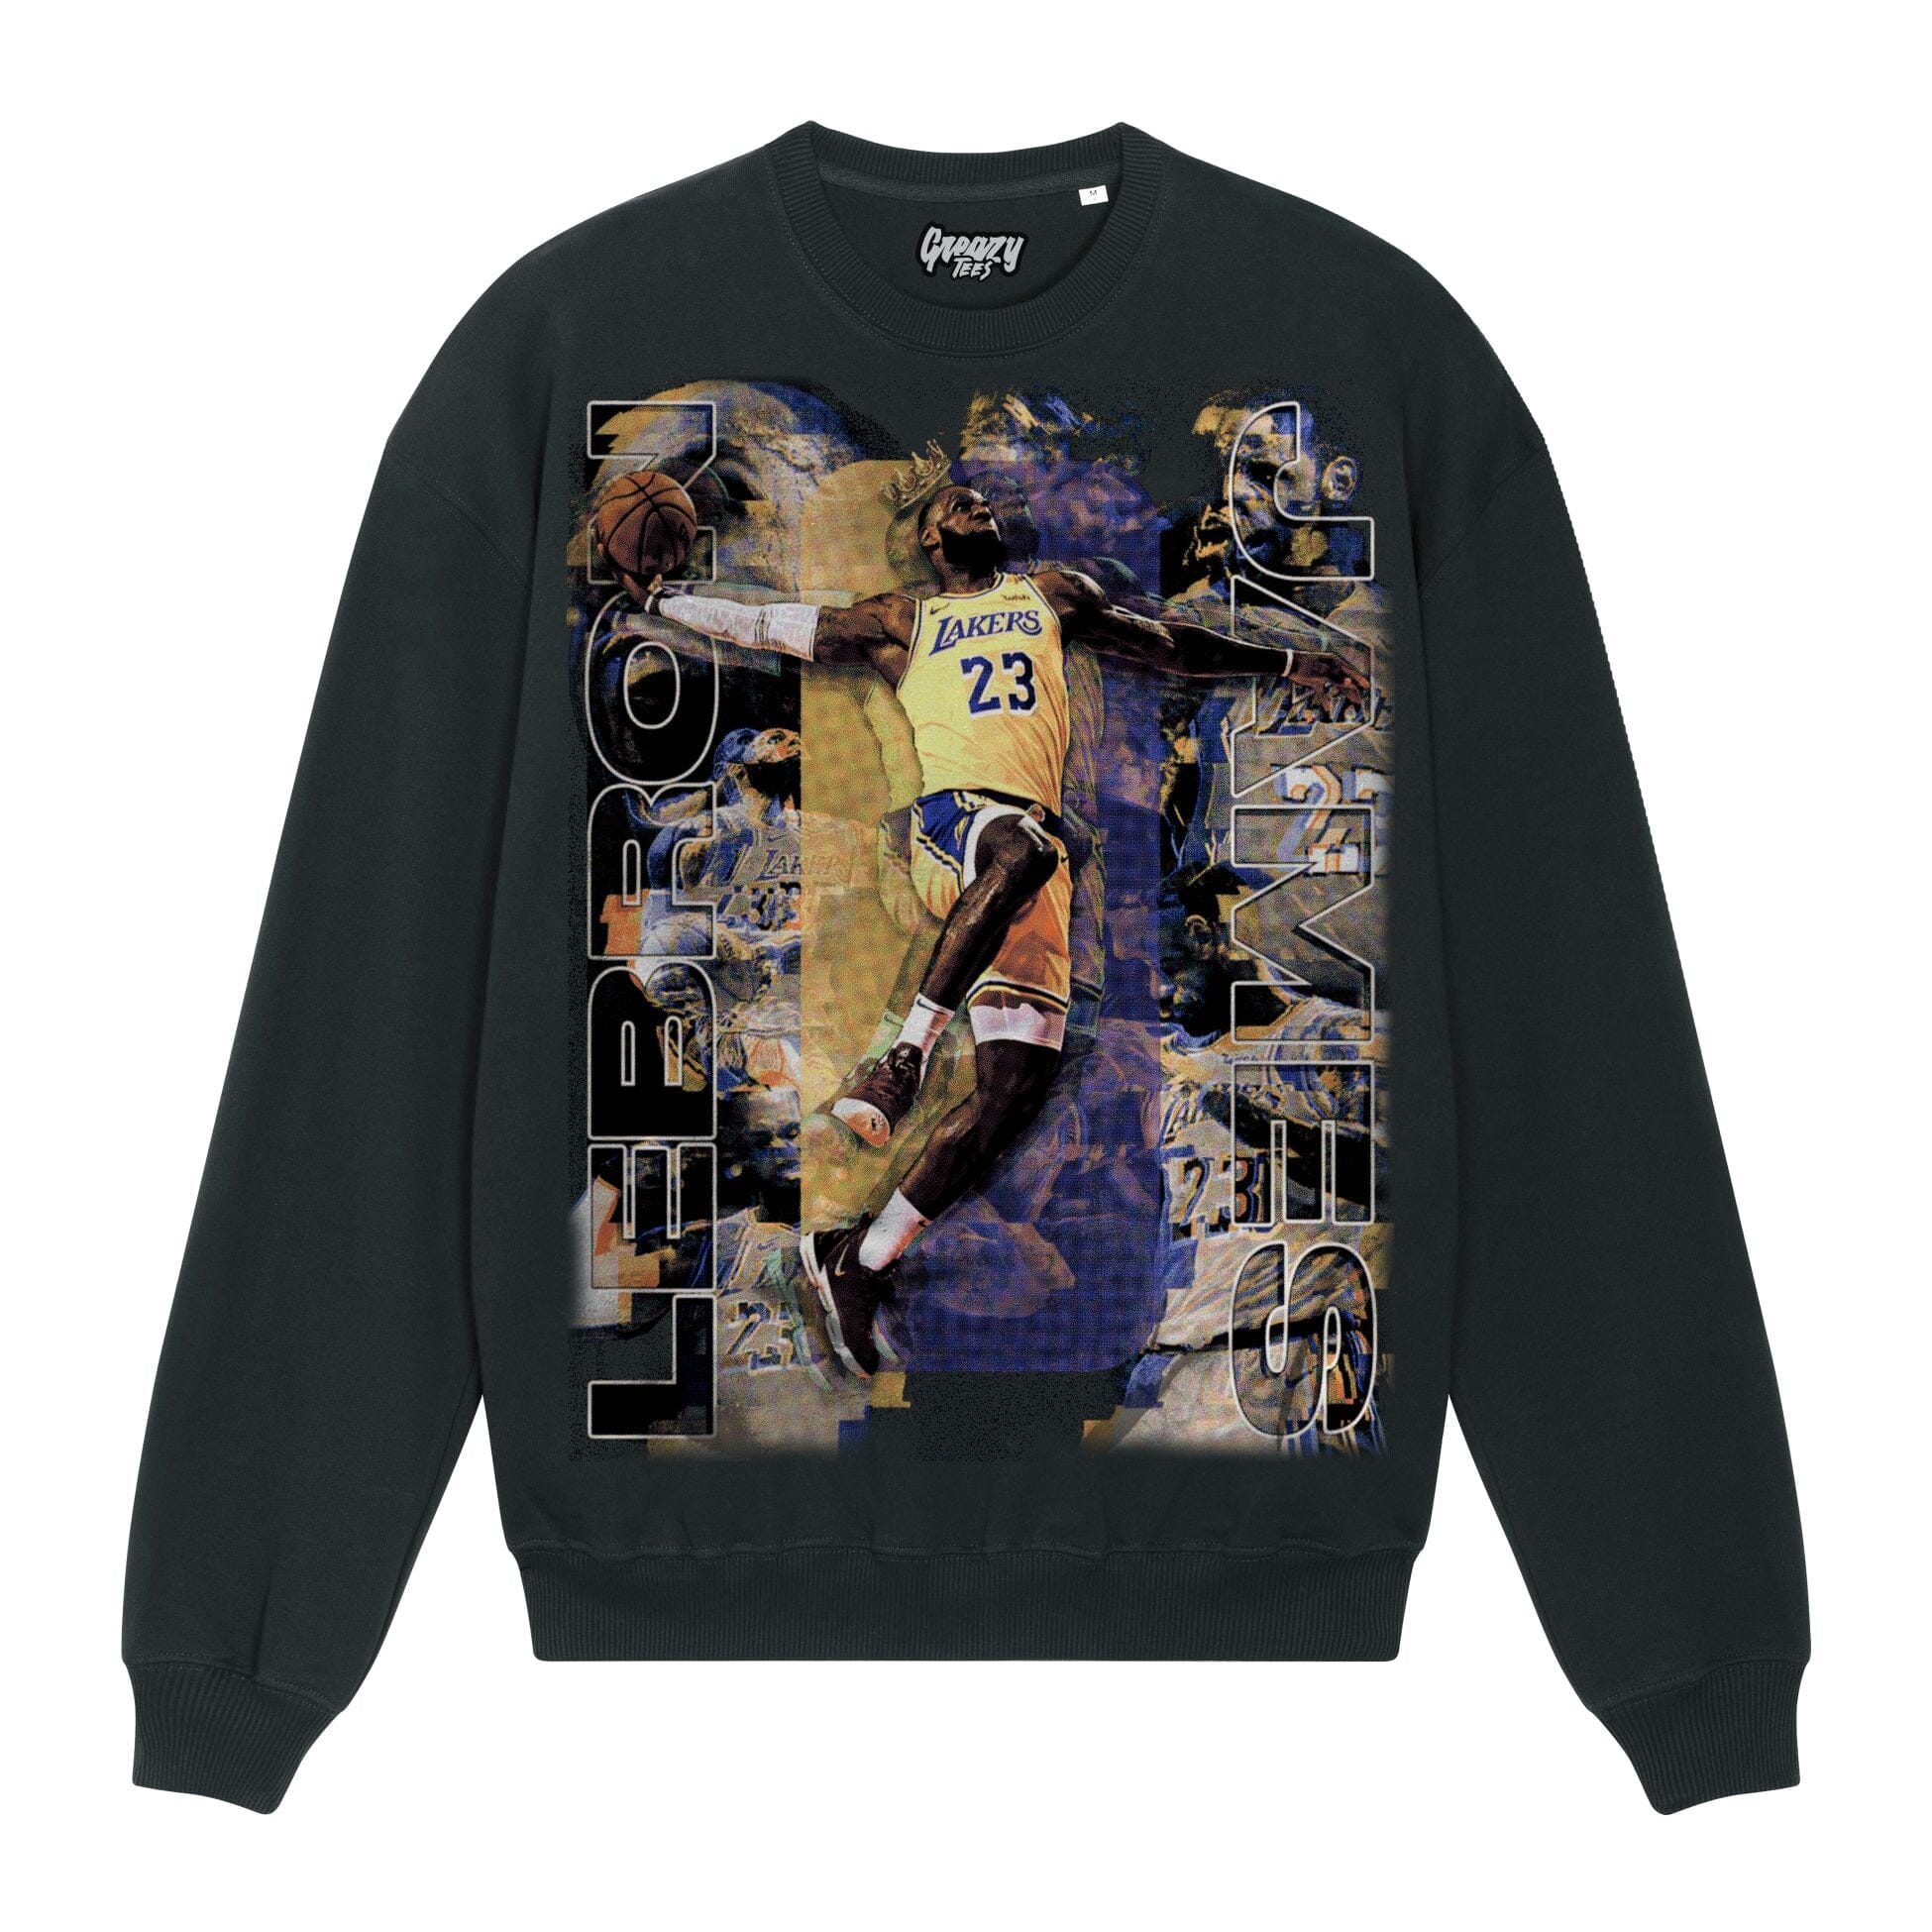 Lebron James Sweatshirt Sweatshirt Greazy Tees XS Black Oversized